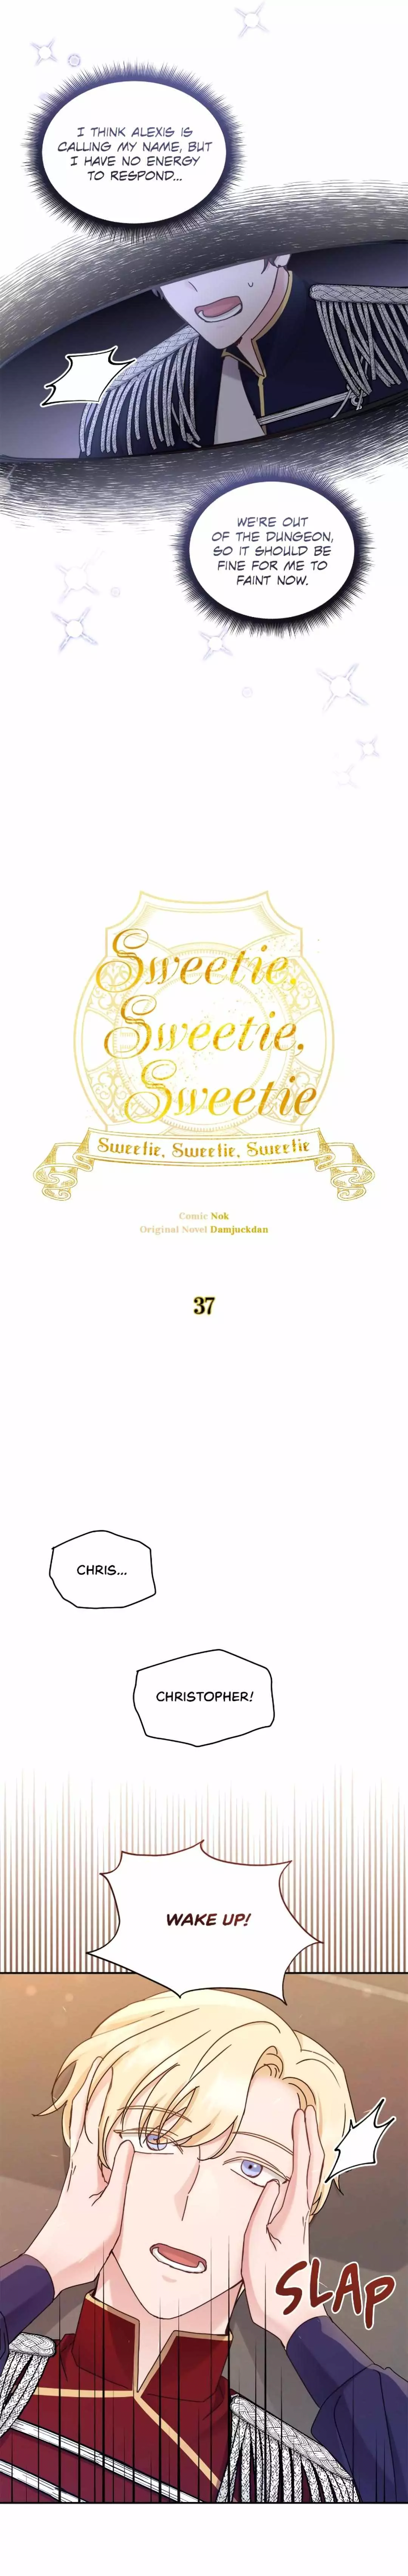 Sweetie, Sweetie, Sweetie - 37 page 11-78510c4b